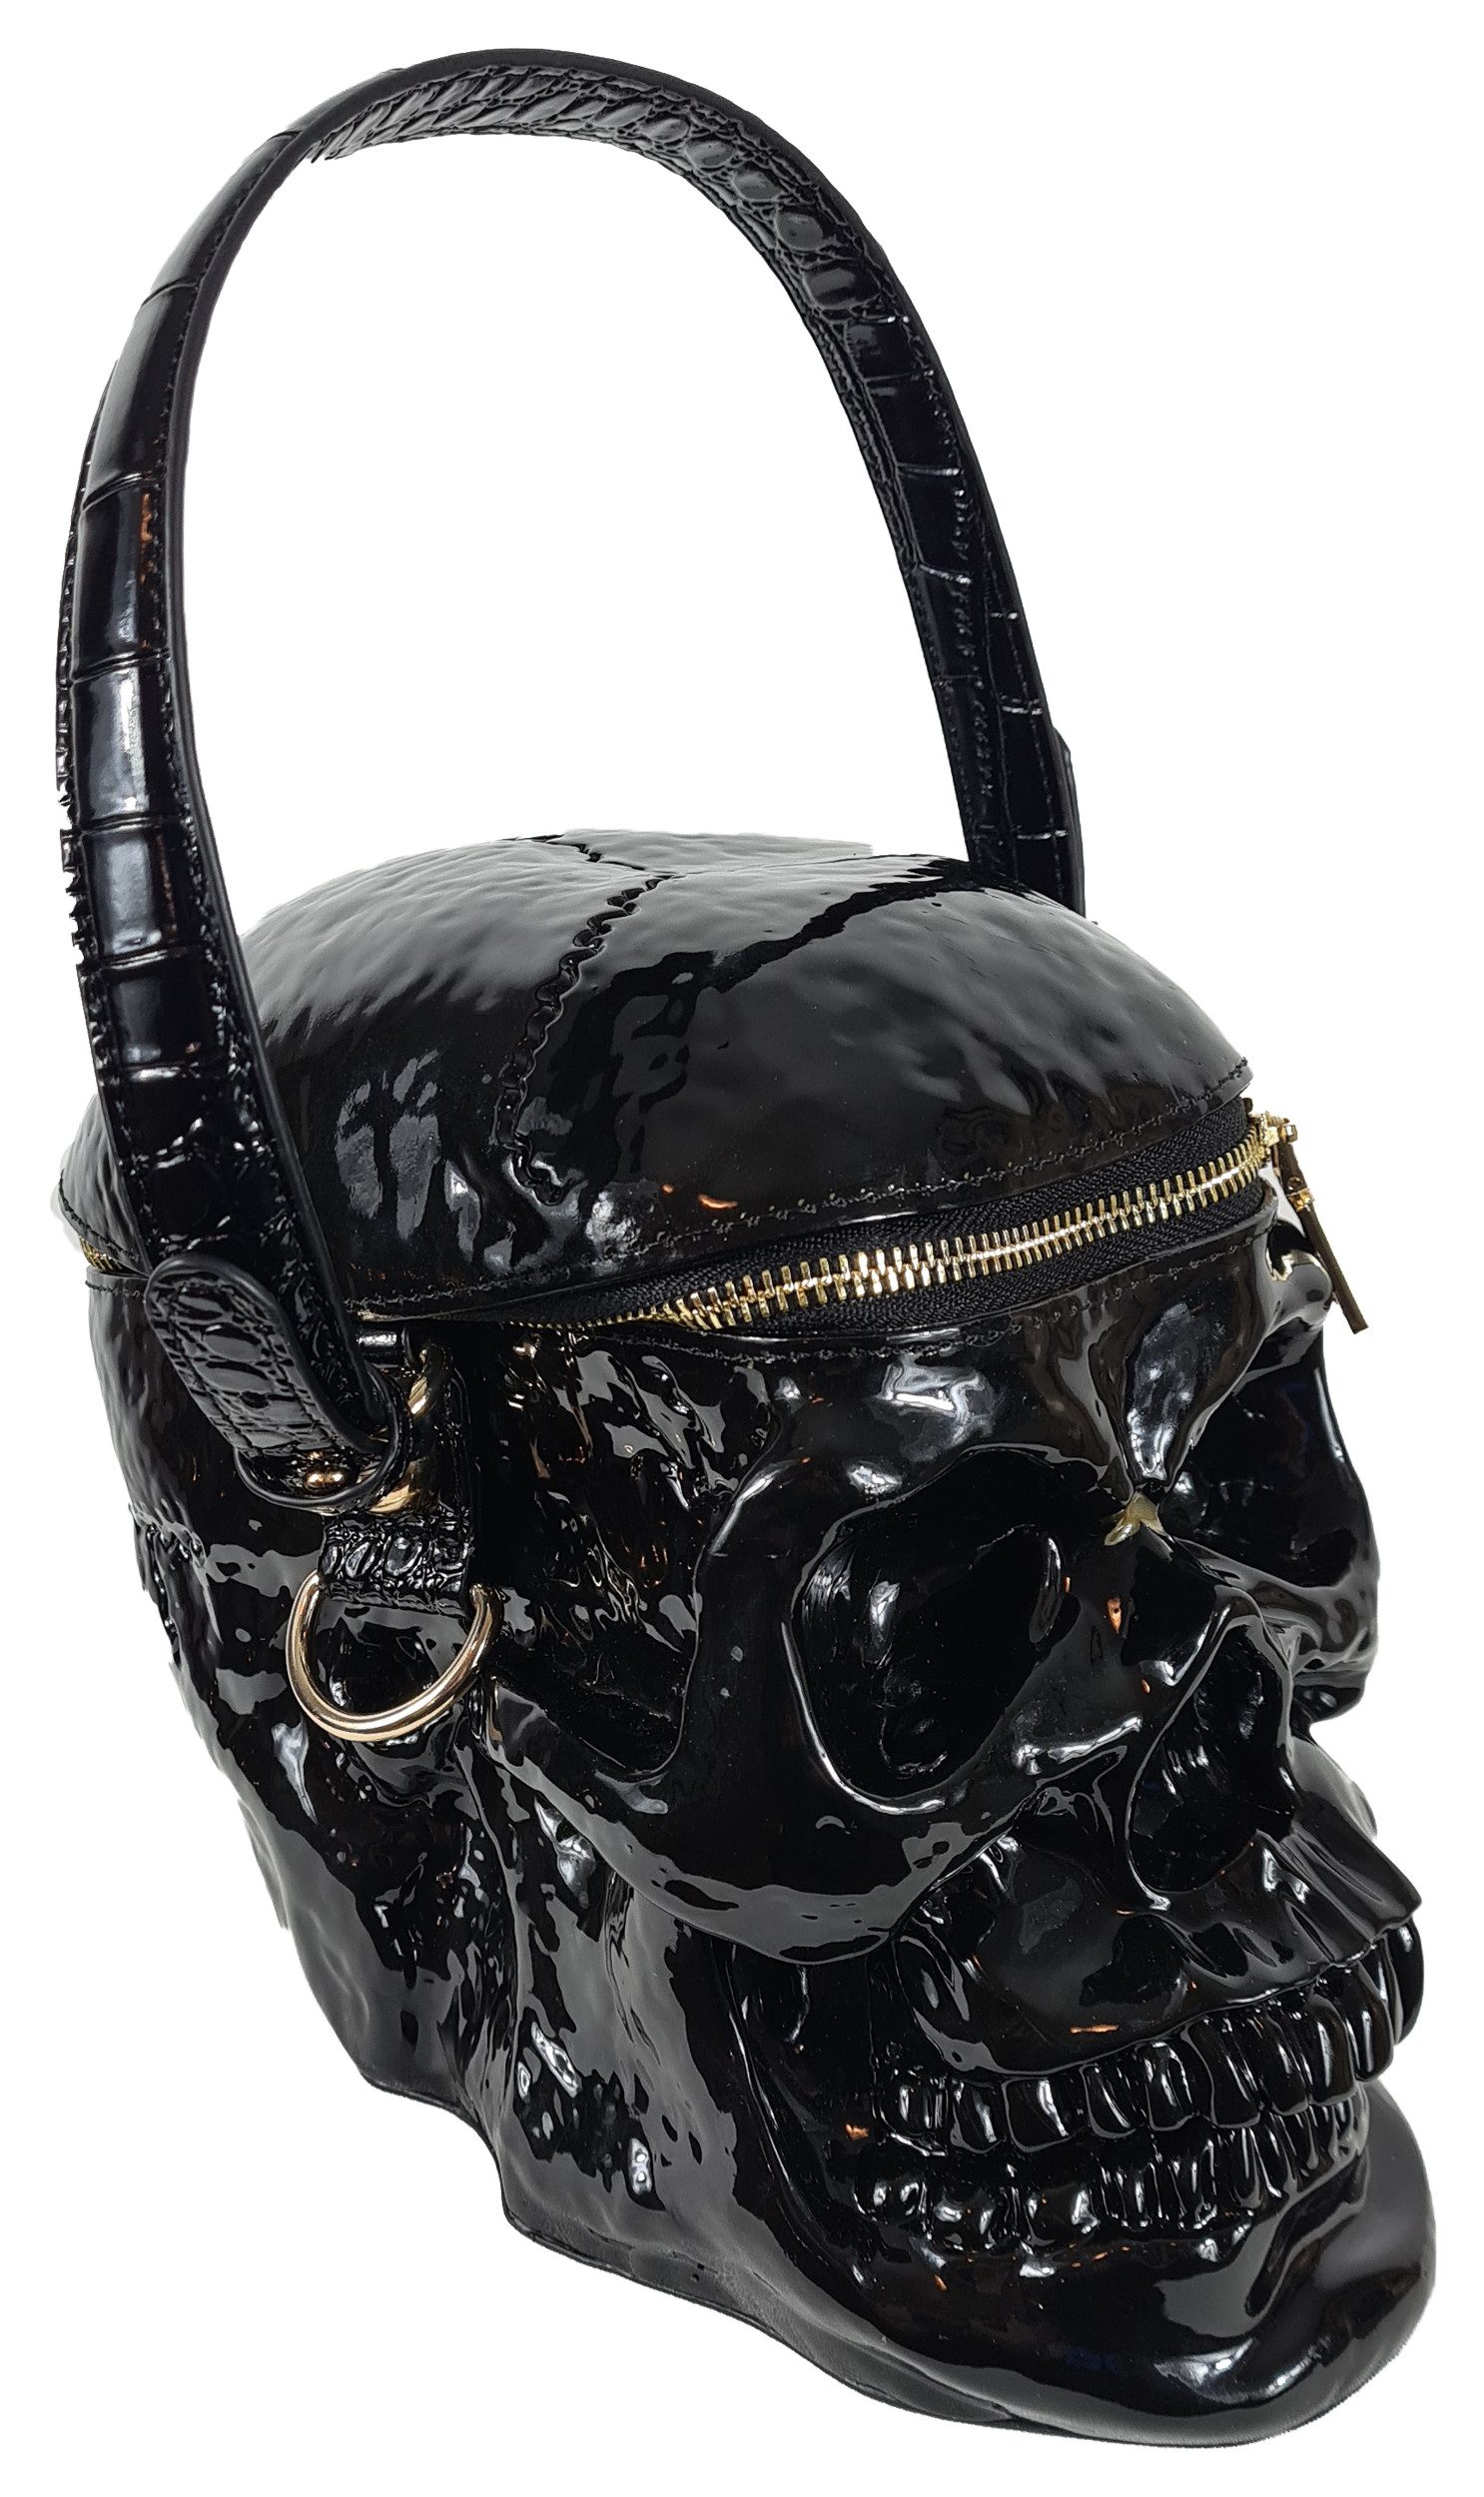 Einkaufszauber Handtasche Designer Handtasche Skull Totenkopf, Form wie ein Totenkopf